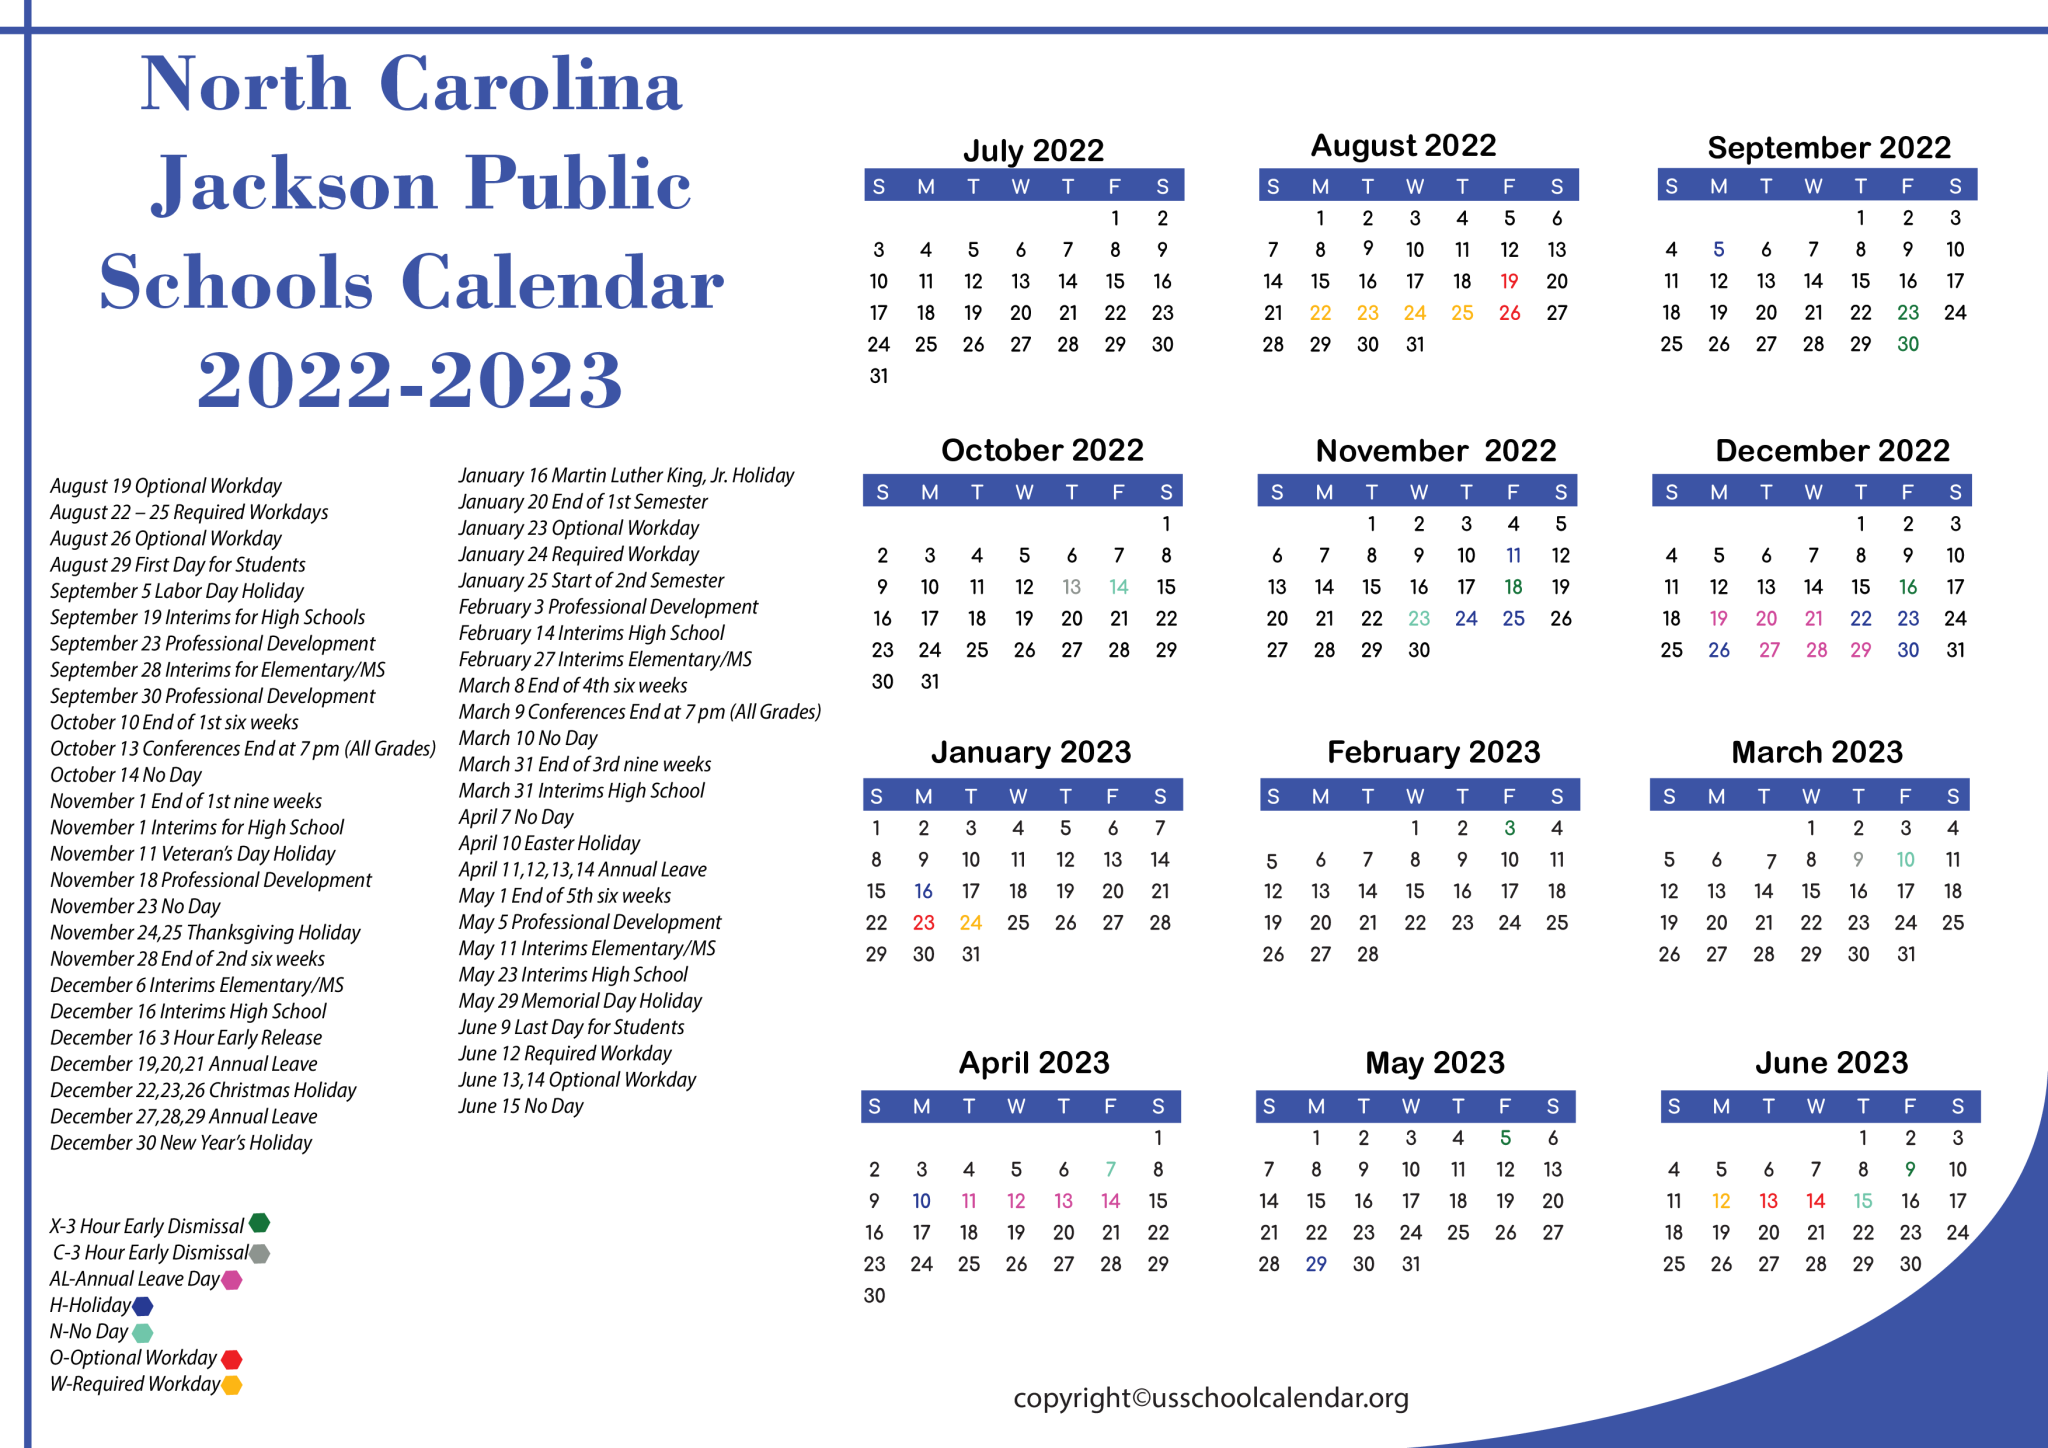 North Carolina Montgomery County Schools Calendar 2023